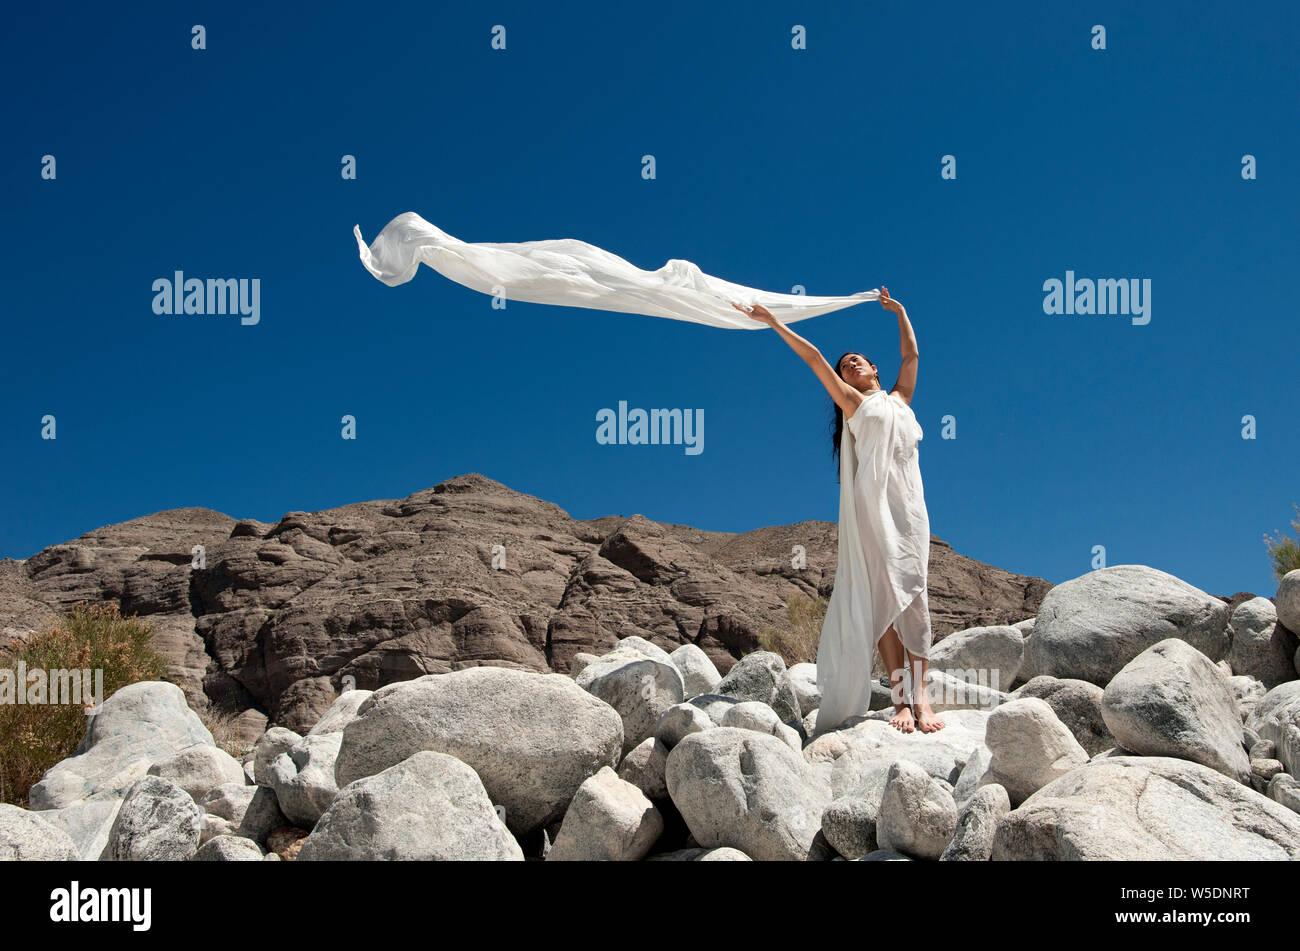 Belle asiatique spirituelle femme coréenne dans le désert, simplement vêtue d'une robe blanche. Le vent est portant son écharpe blanche au-dessus. Banque D'Images